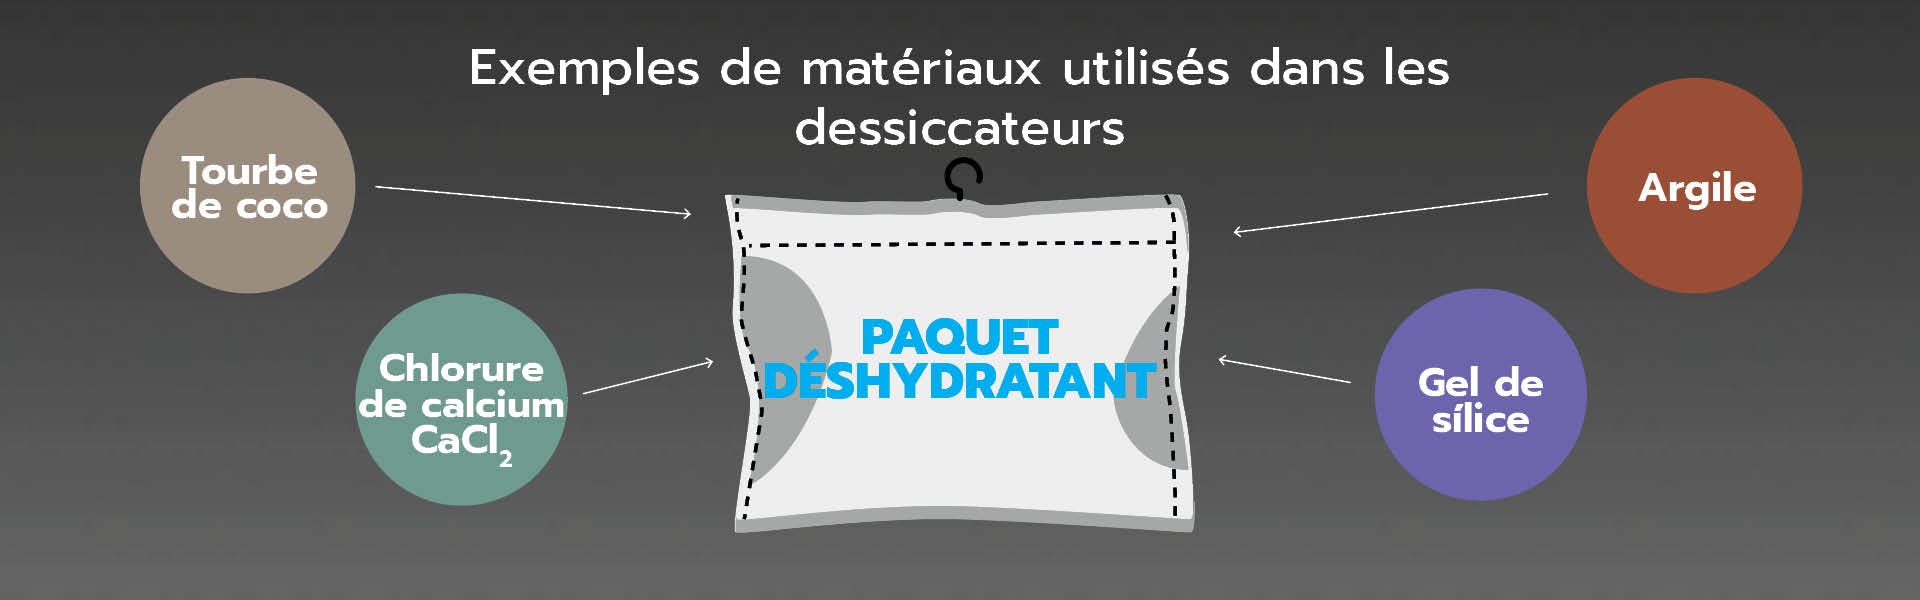 article images desiccant substances french language